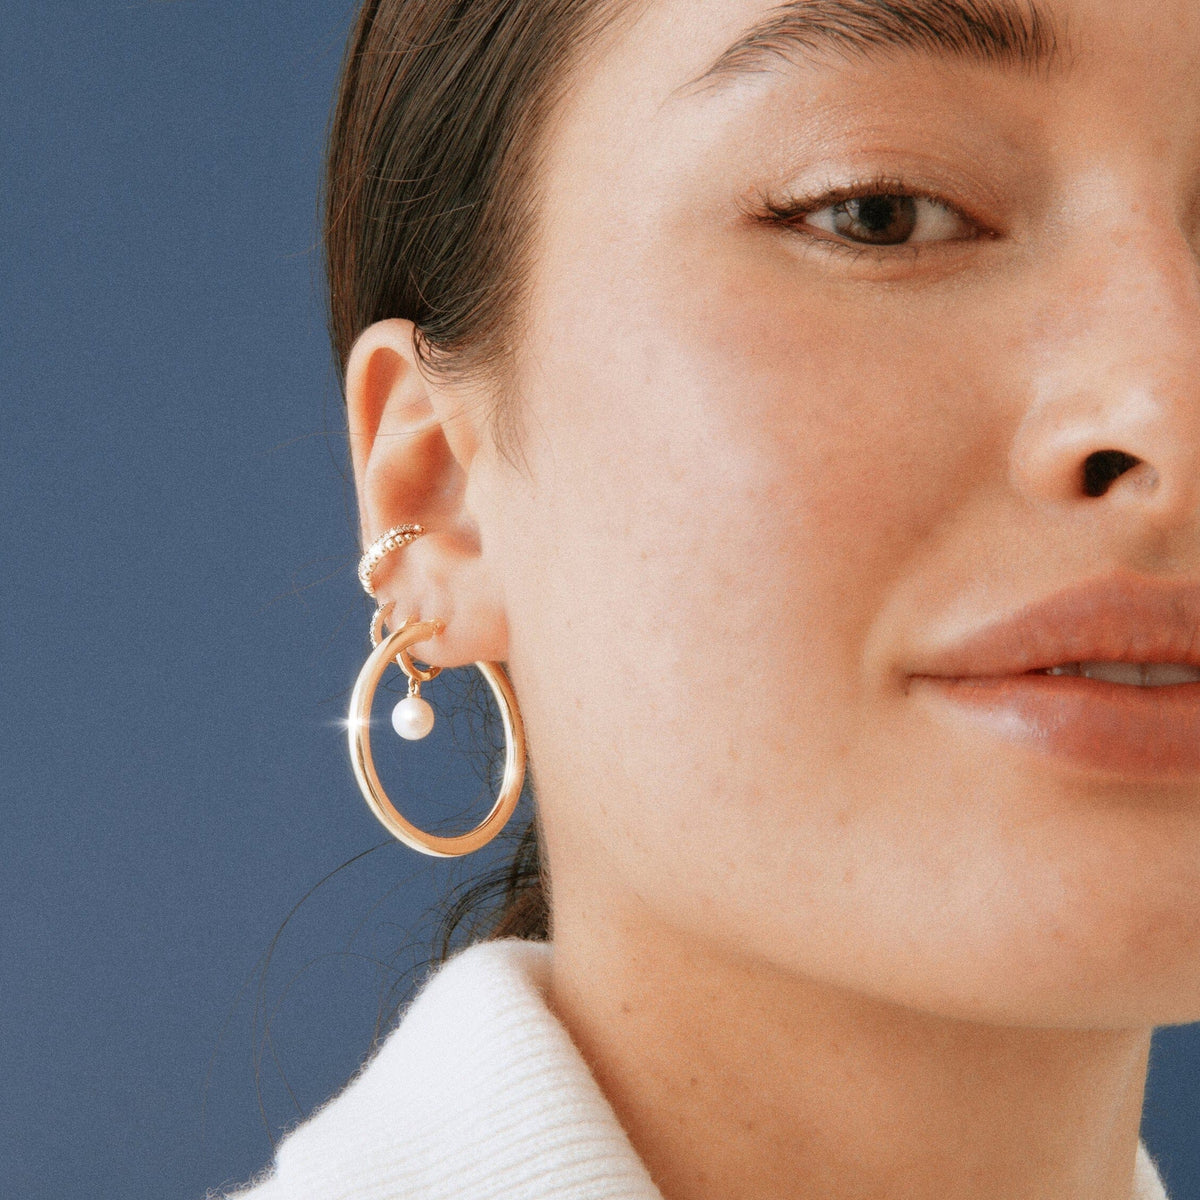 Lisa Yang Jewelry : DIY Small Coiled Wire Hoop Earrings (Huggie Hoops)